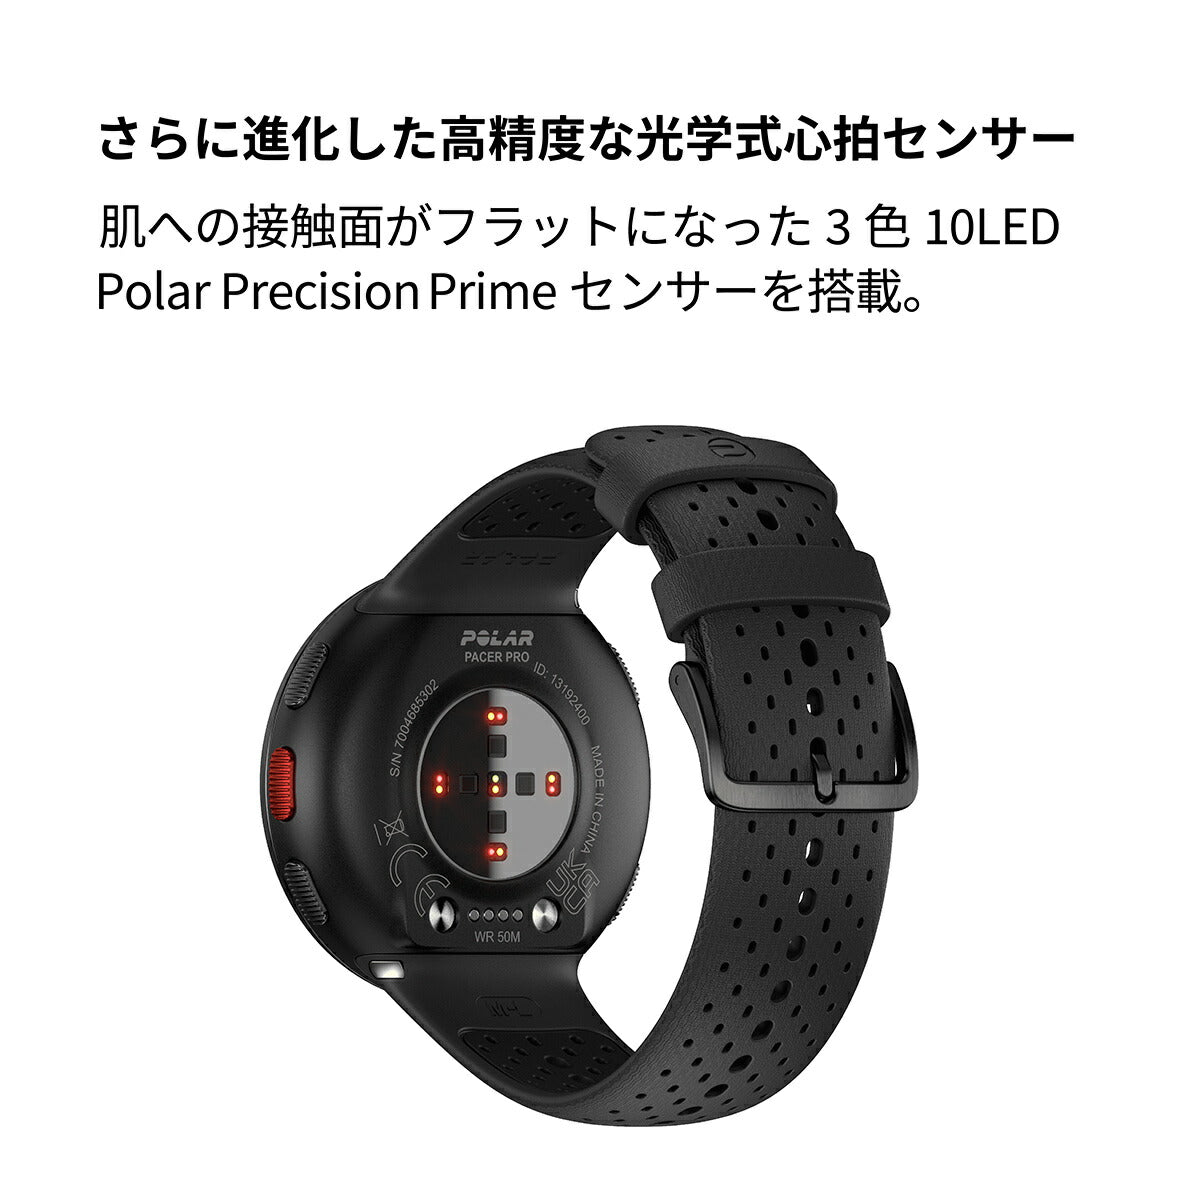 ポラール POLAR PACER PRO スマートウォッチ GPS 心拍 トレーニング ランニング マラソン 腕時計 ぺーサープロ カーボンブラック S-L 900102178 日本正規品